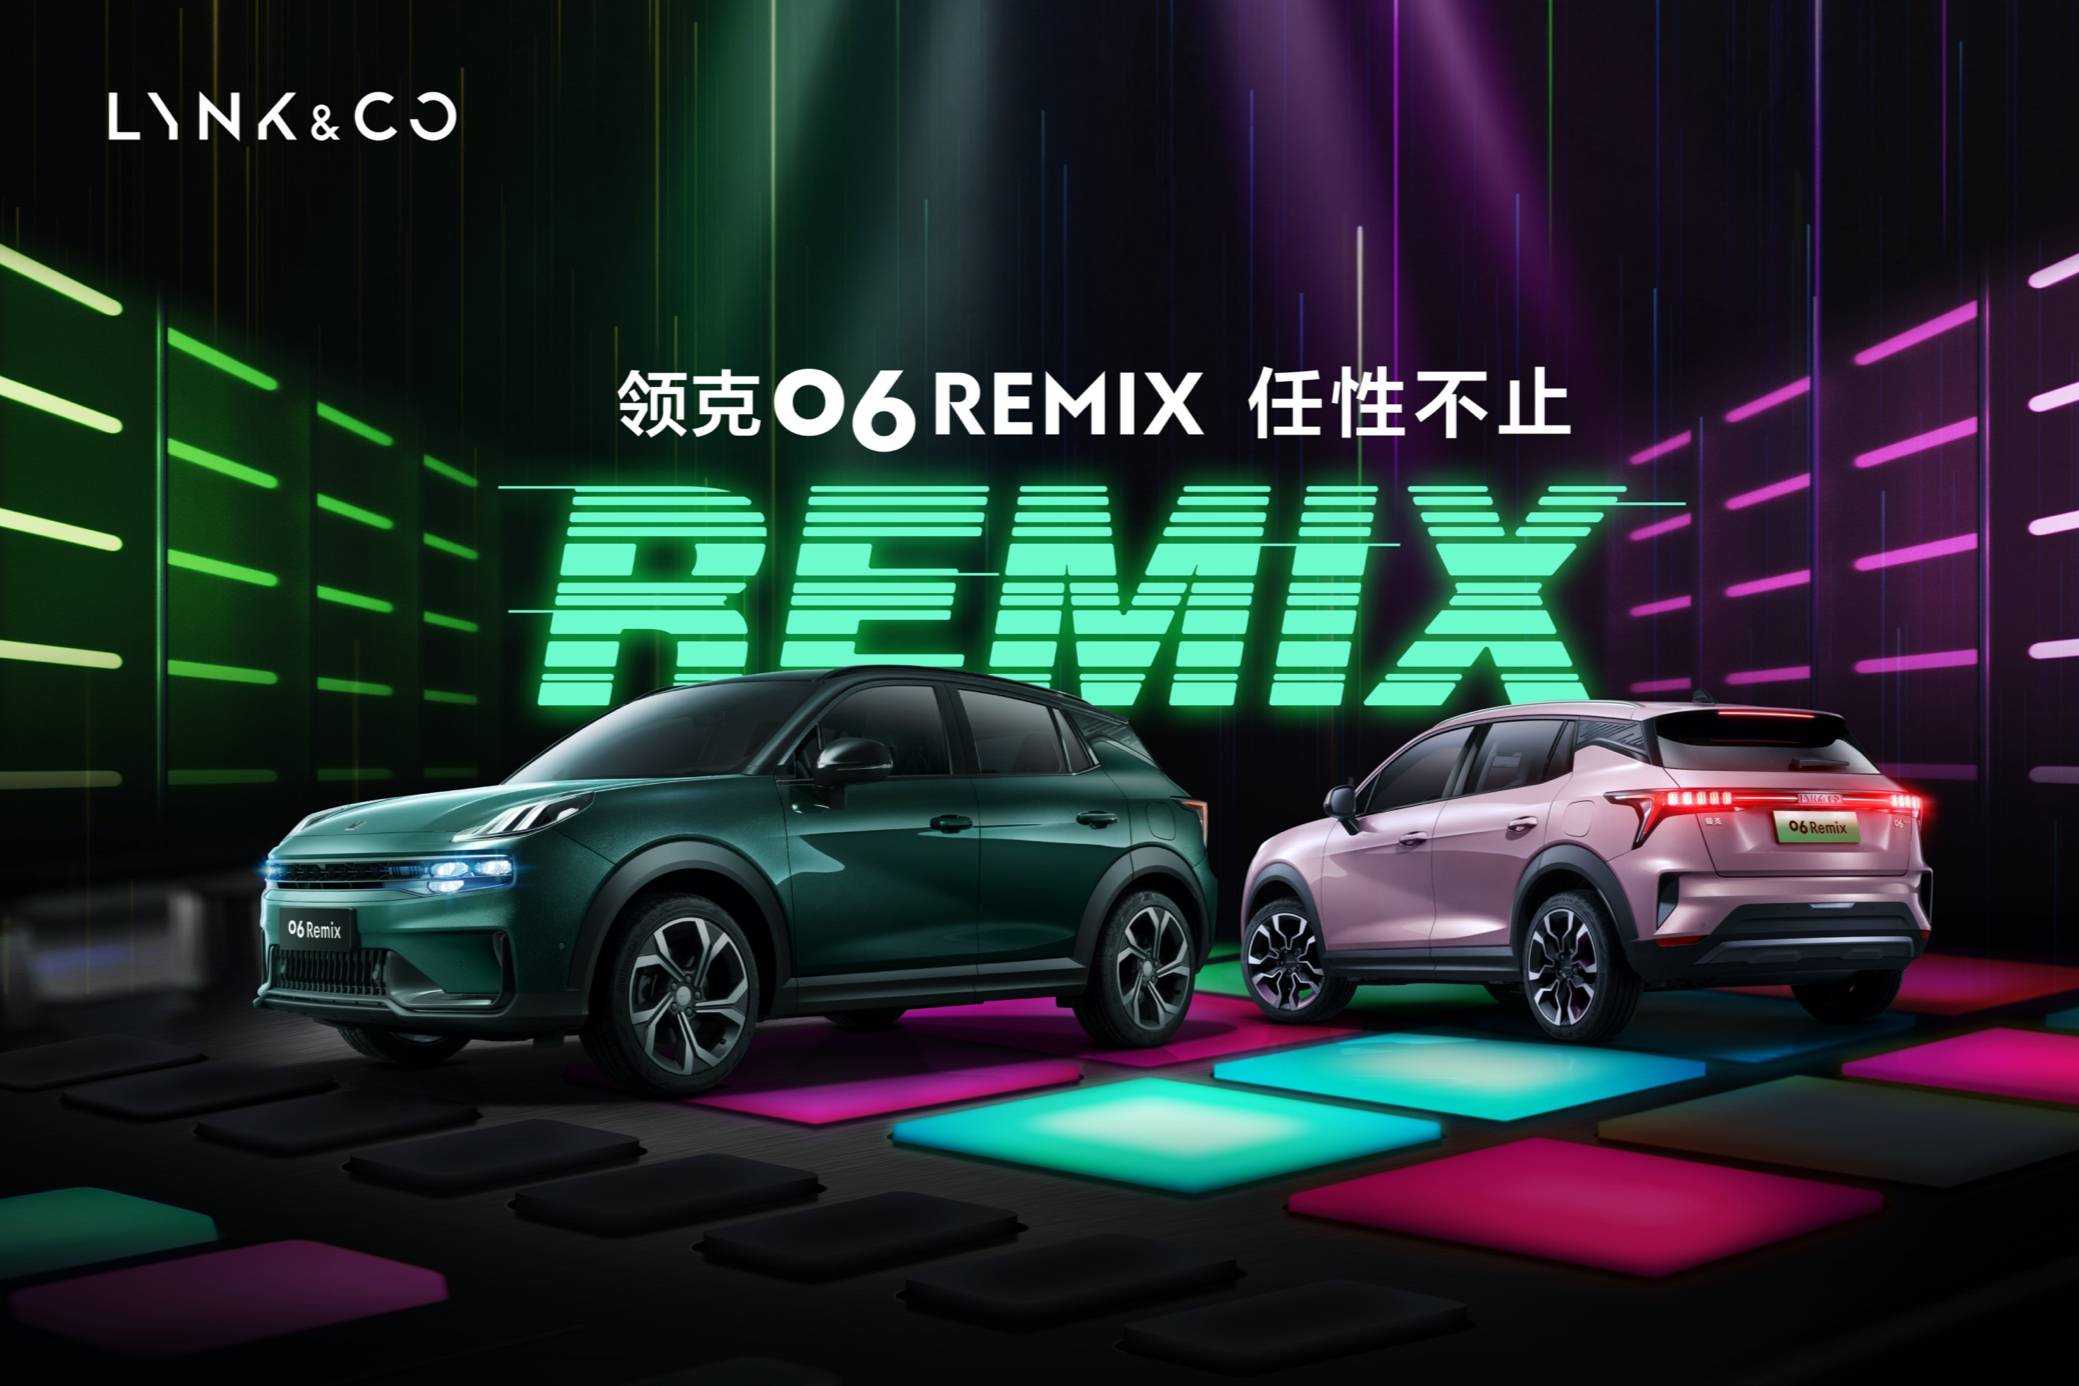 领克06 Remix宣告上市 全新专属车色Hero绿